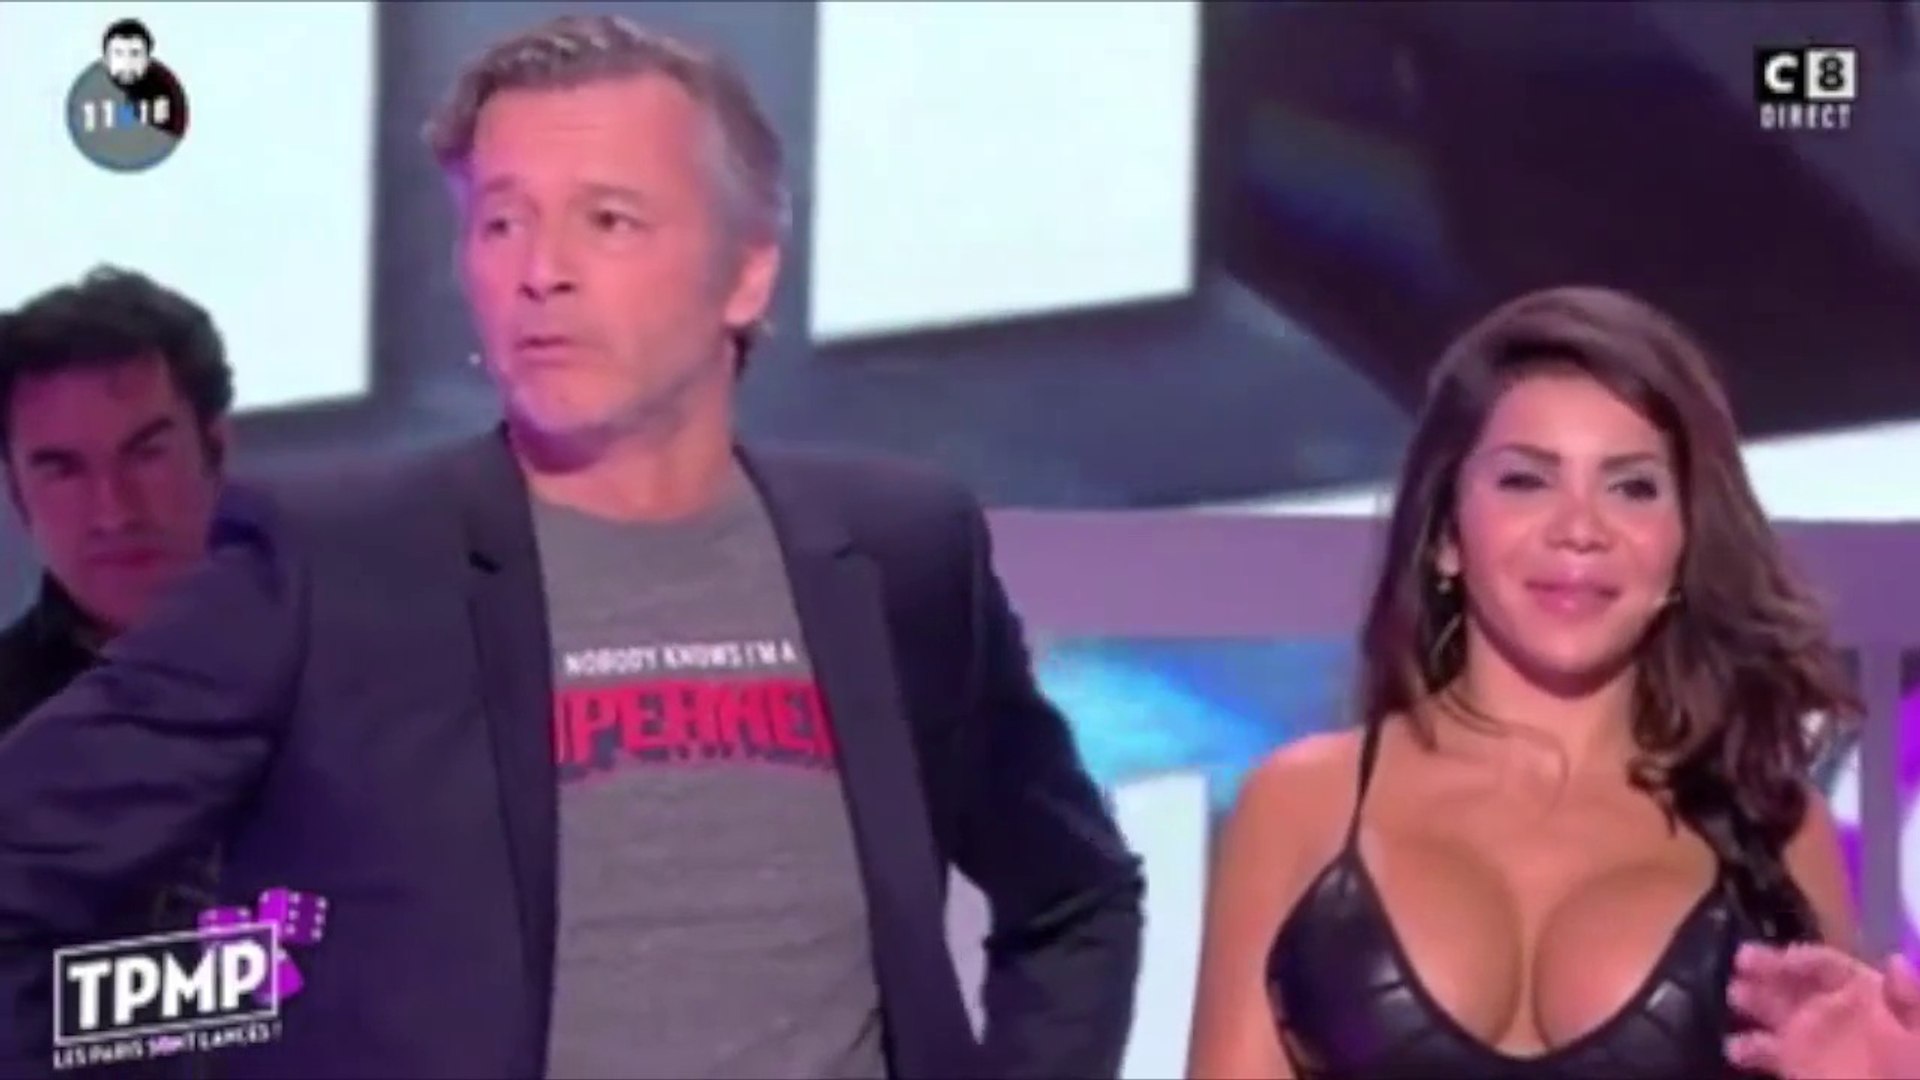 Jean Michel Maire embrasse le sein d'une jeune femme en direct - Vidéo  Dailymotion